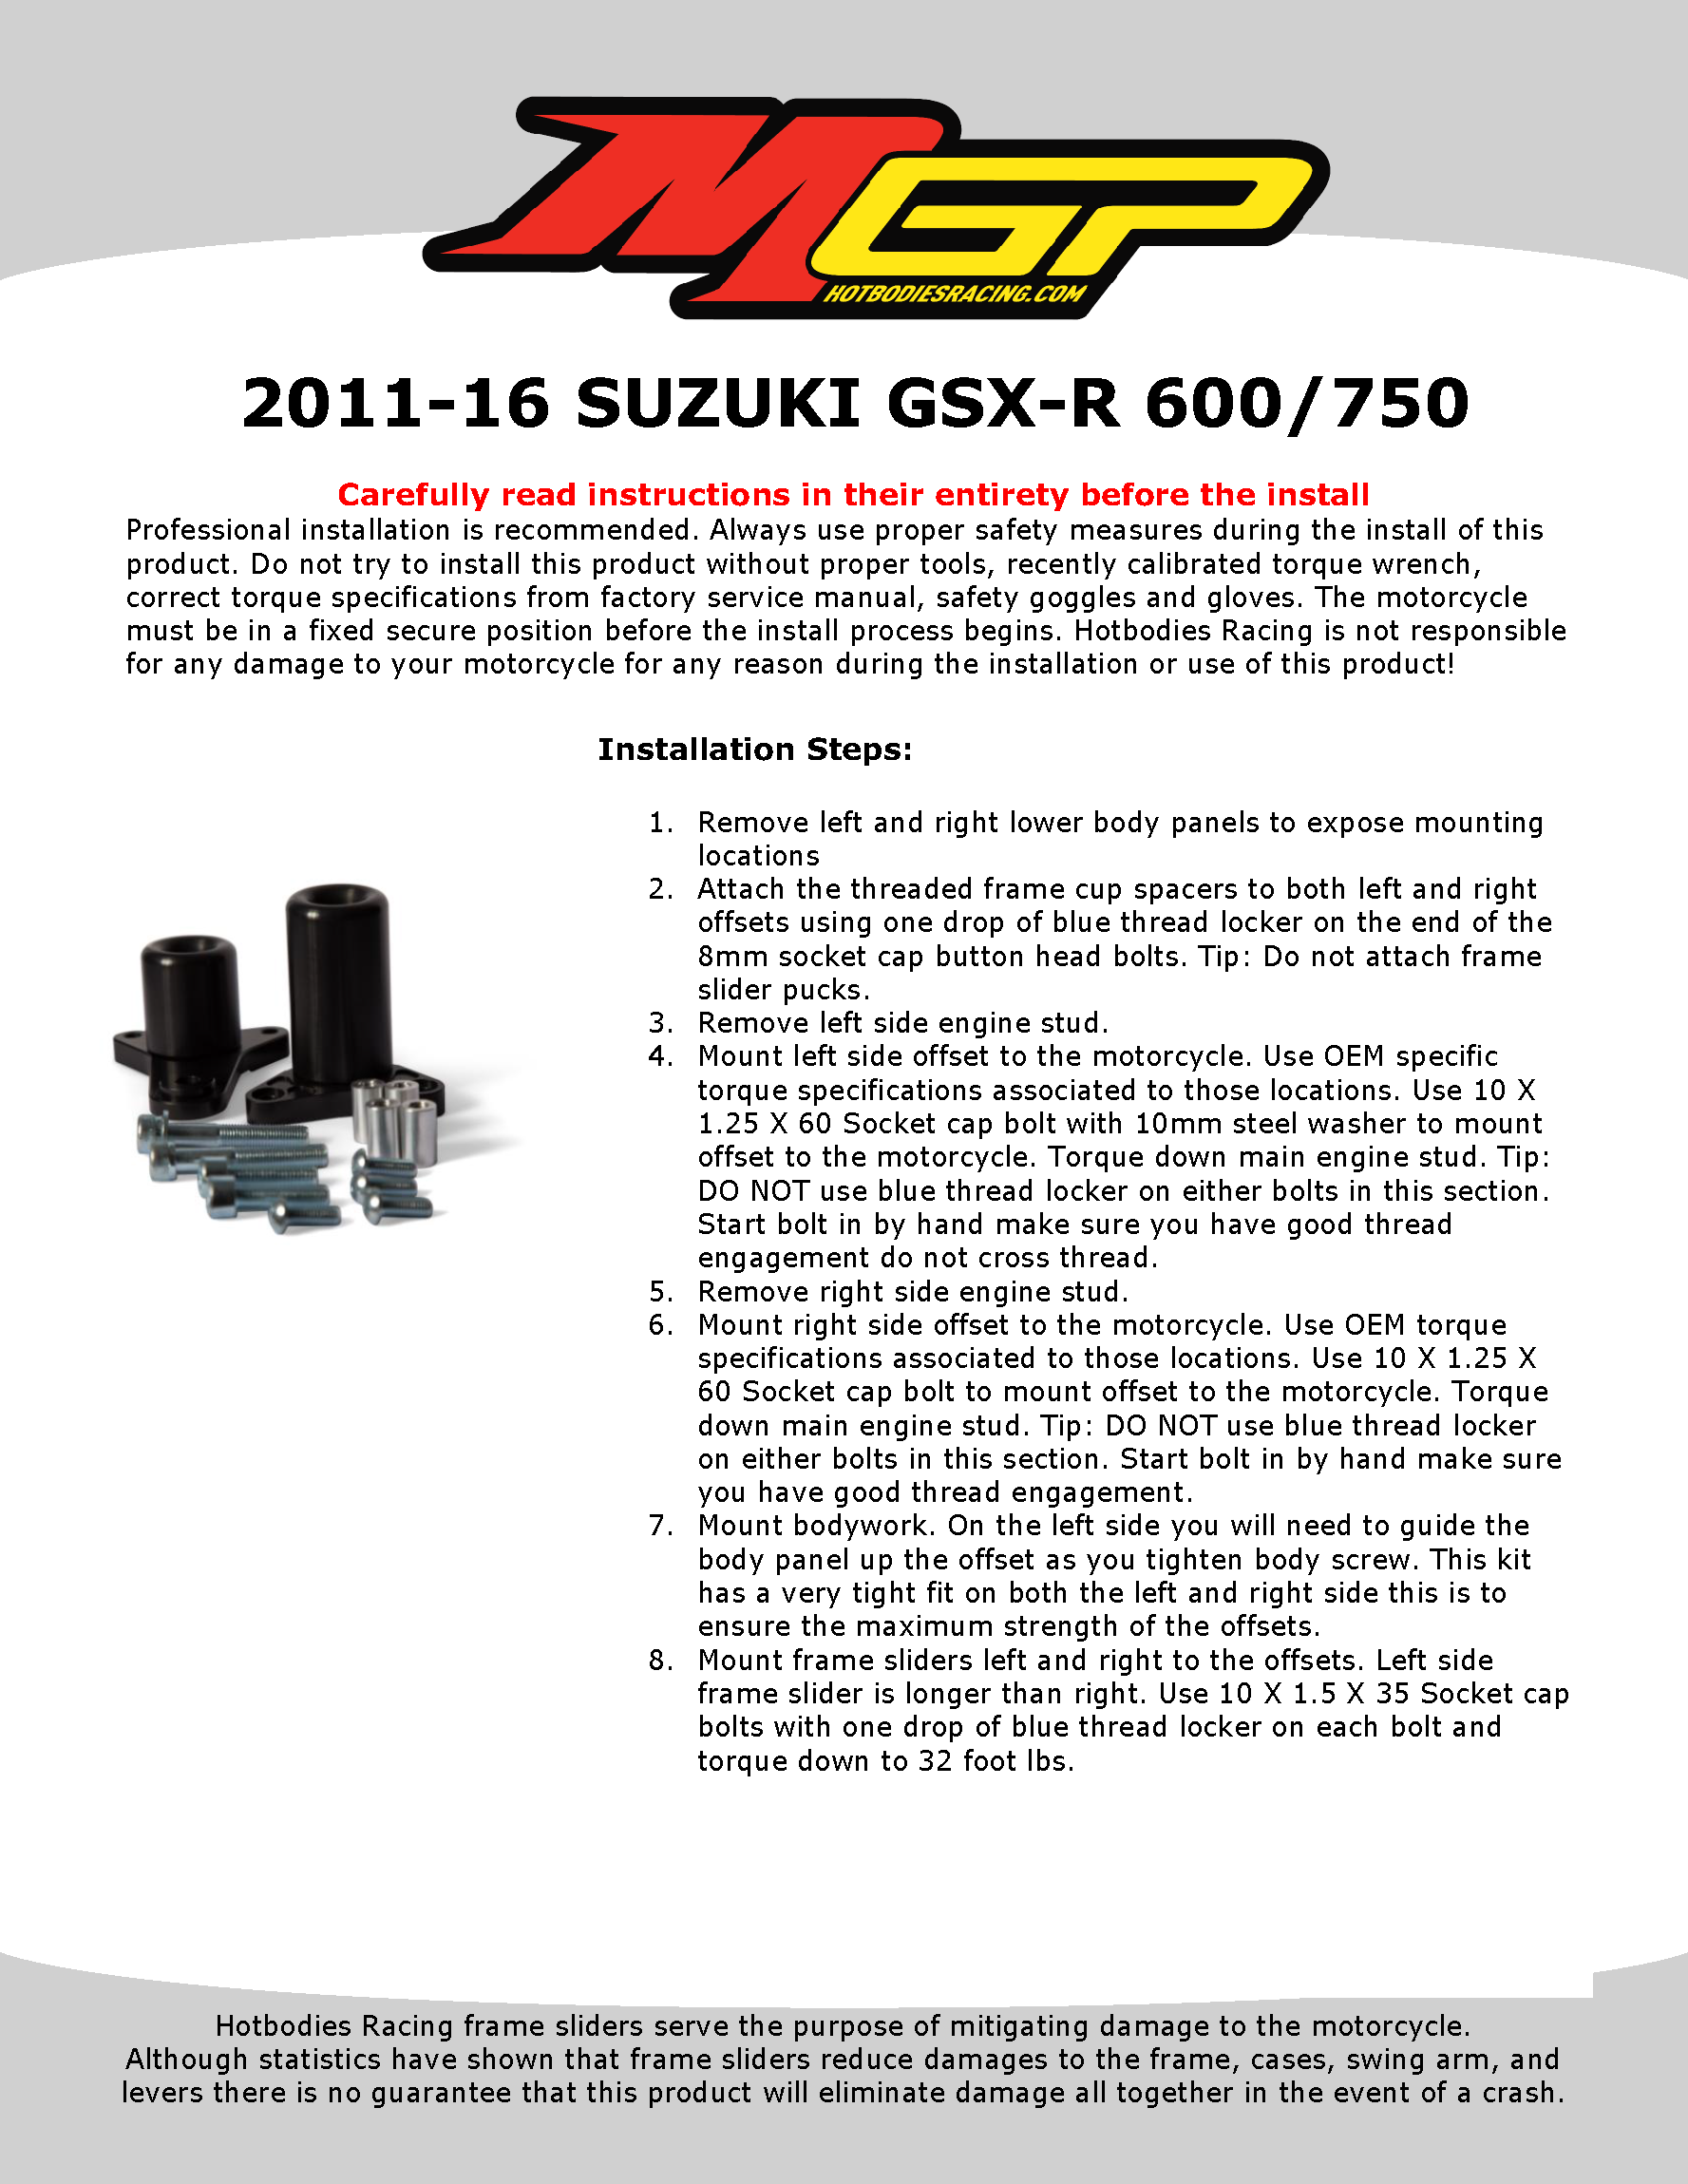 

2011-16 SUZUKI GSX-R 600/750 Installation

